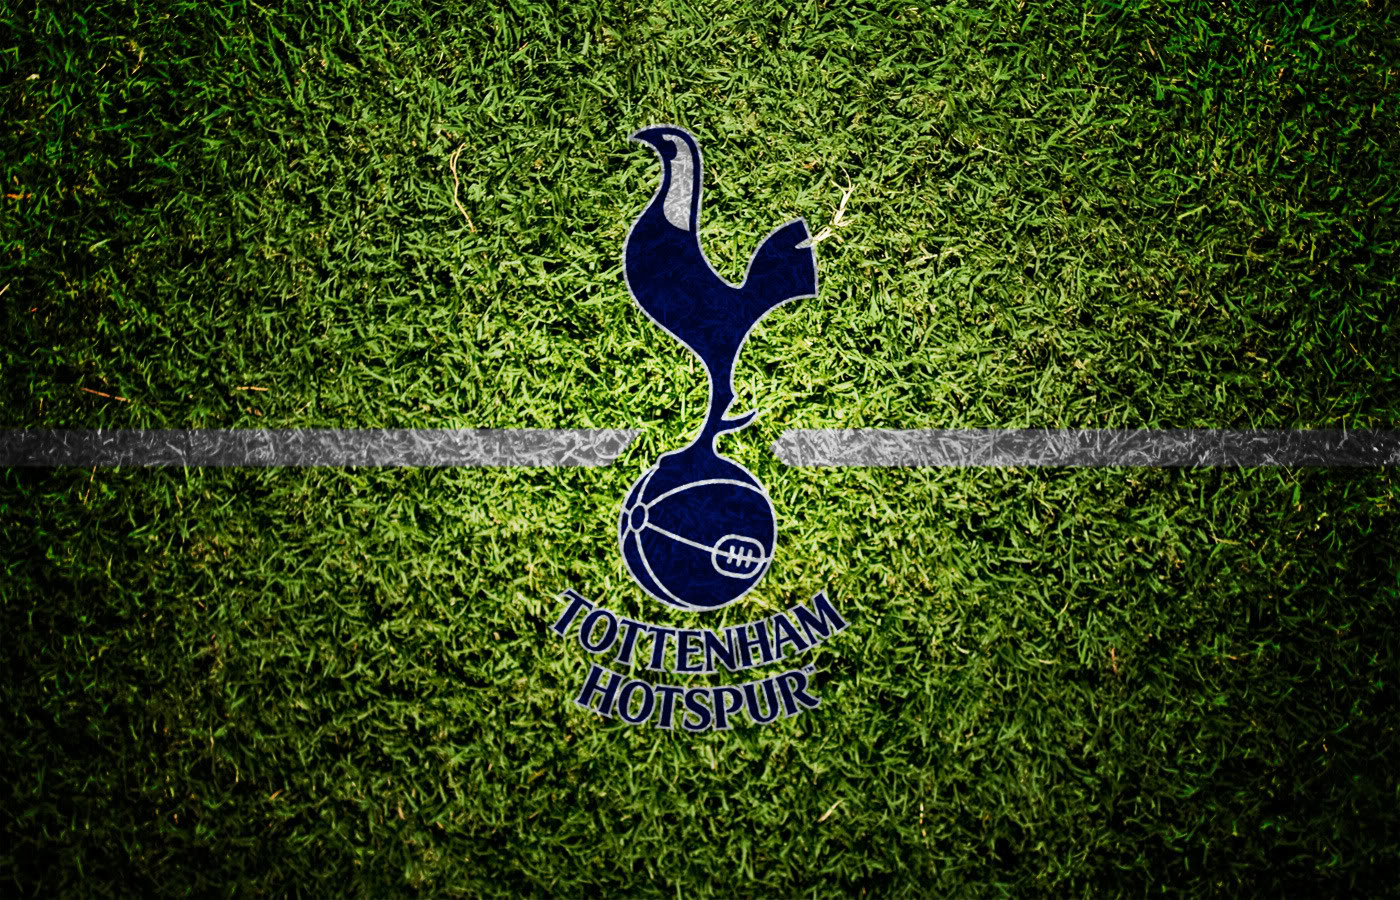 Tottenham Hotspur Grass Background Wallpaper Wallpaperlepi